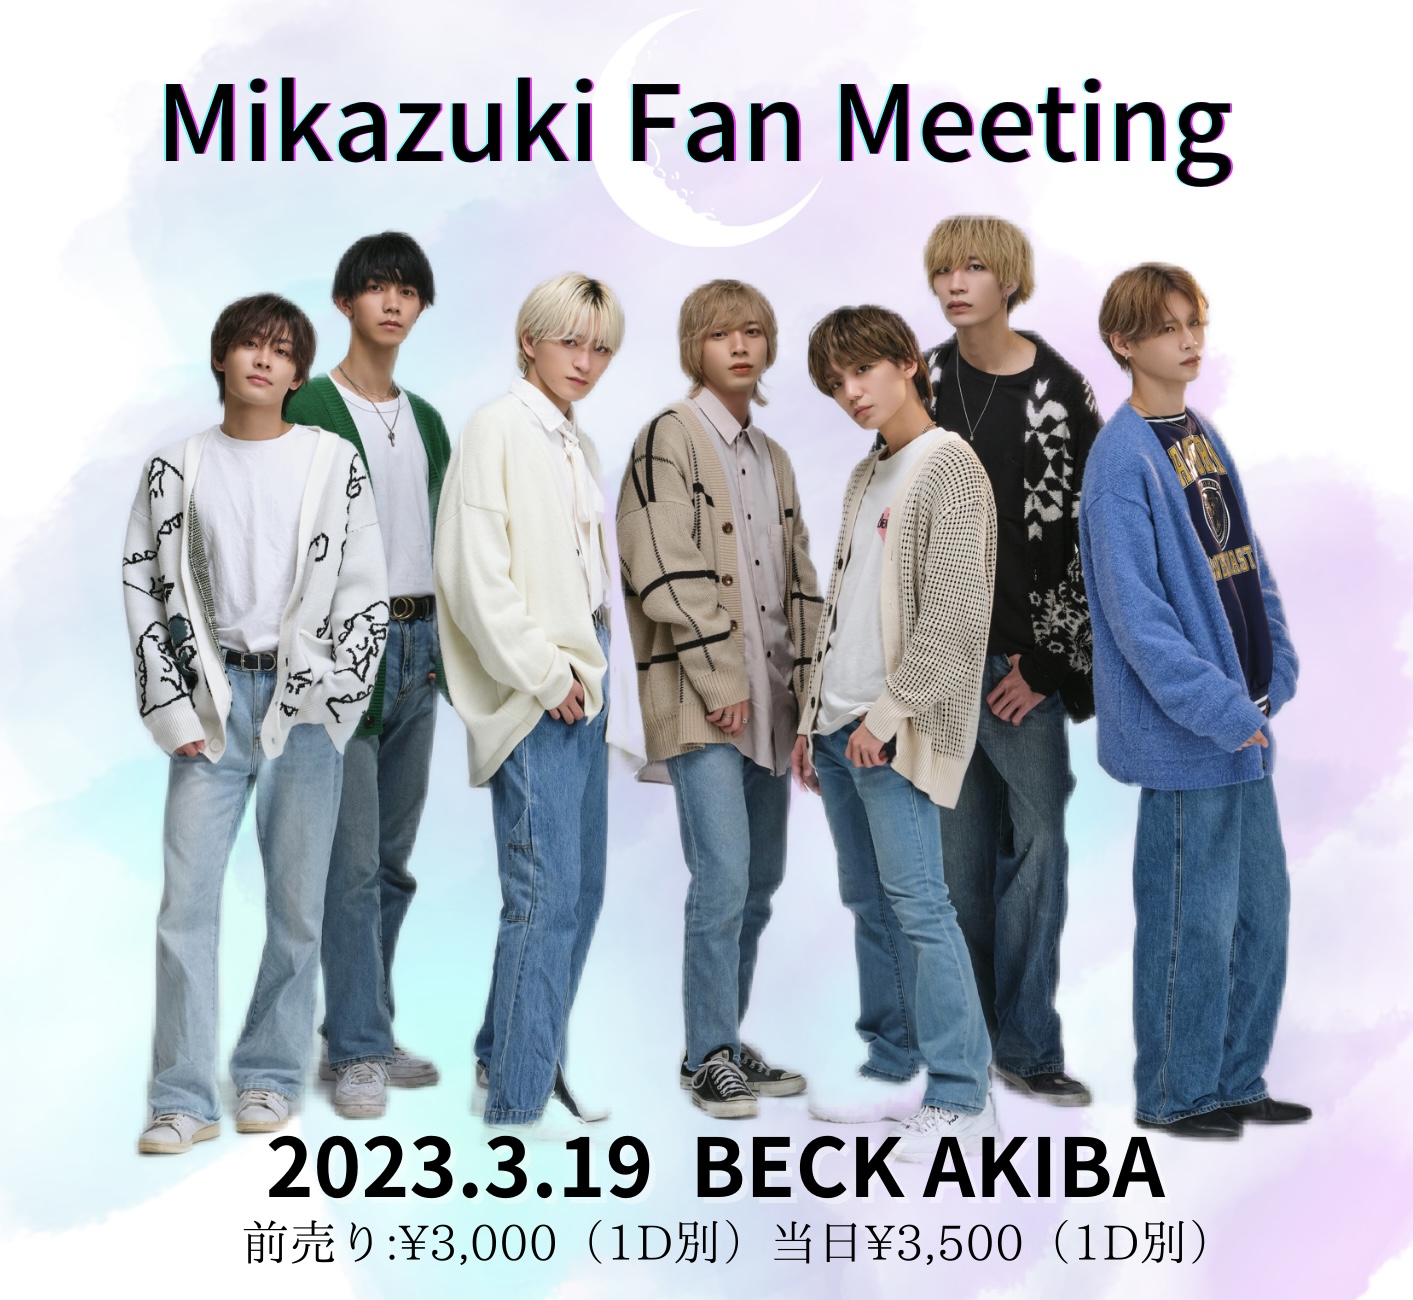 Mikazuki Fan Meeting